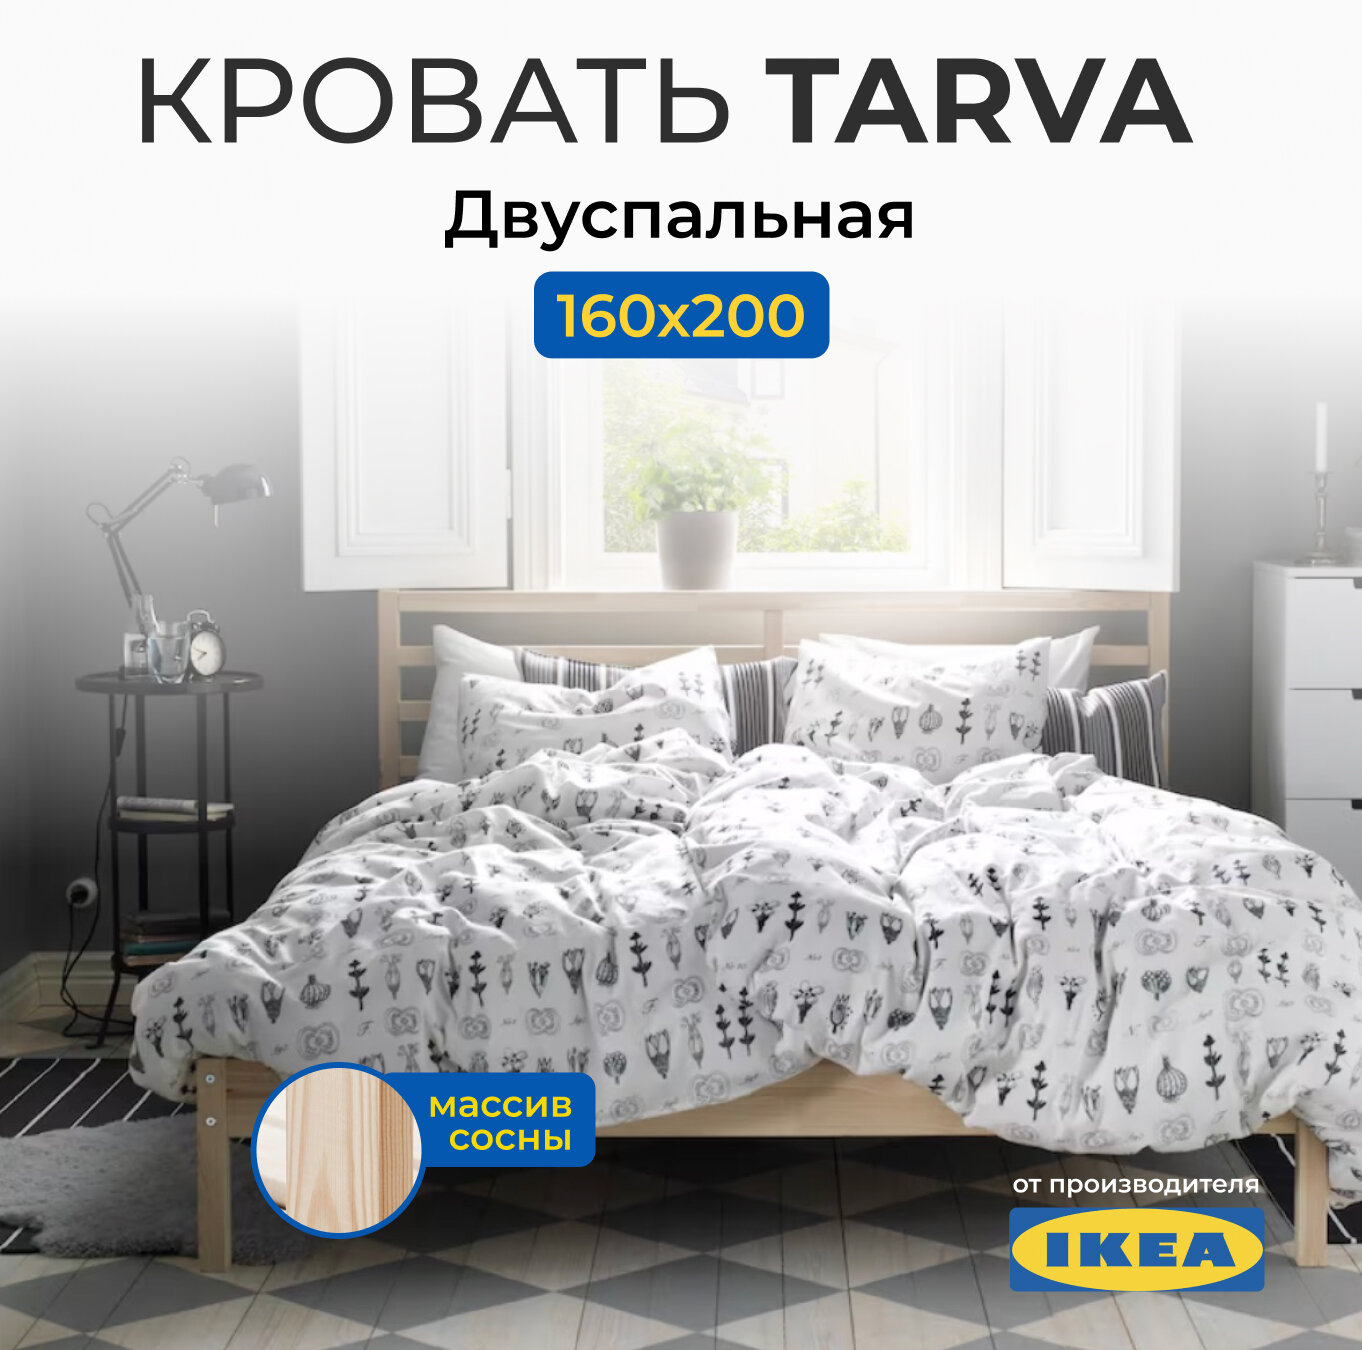 Кровать двуспальная Икеа Тарва, размер (ДхШ): 206х167 см, спальное место (ДхШ): 200х160 см, массив дерева, цвет: сосна